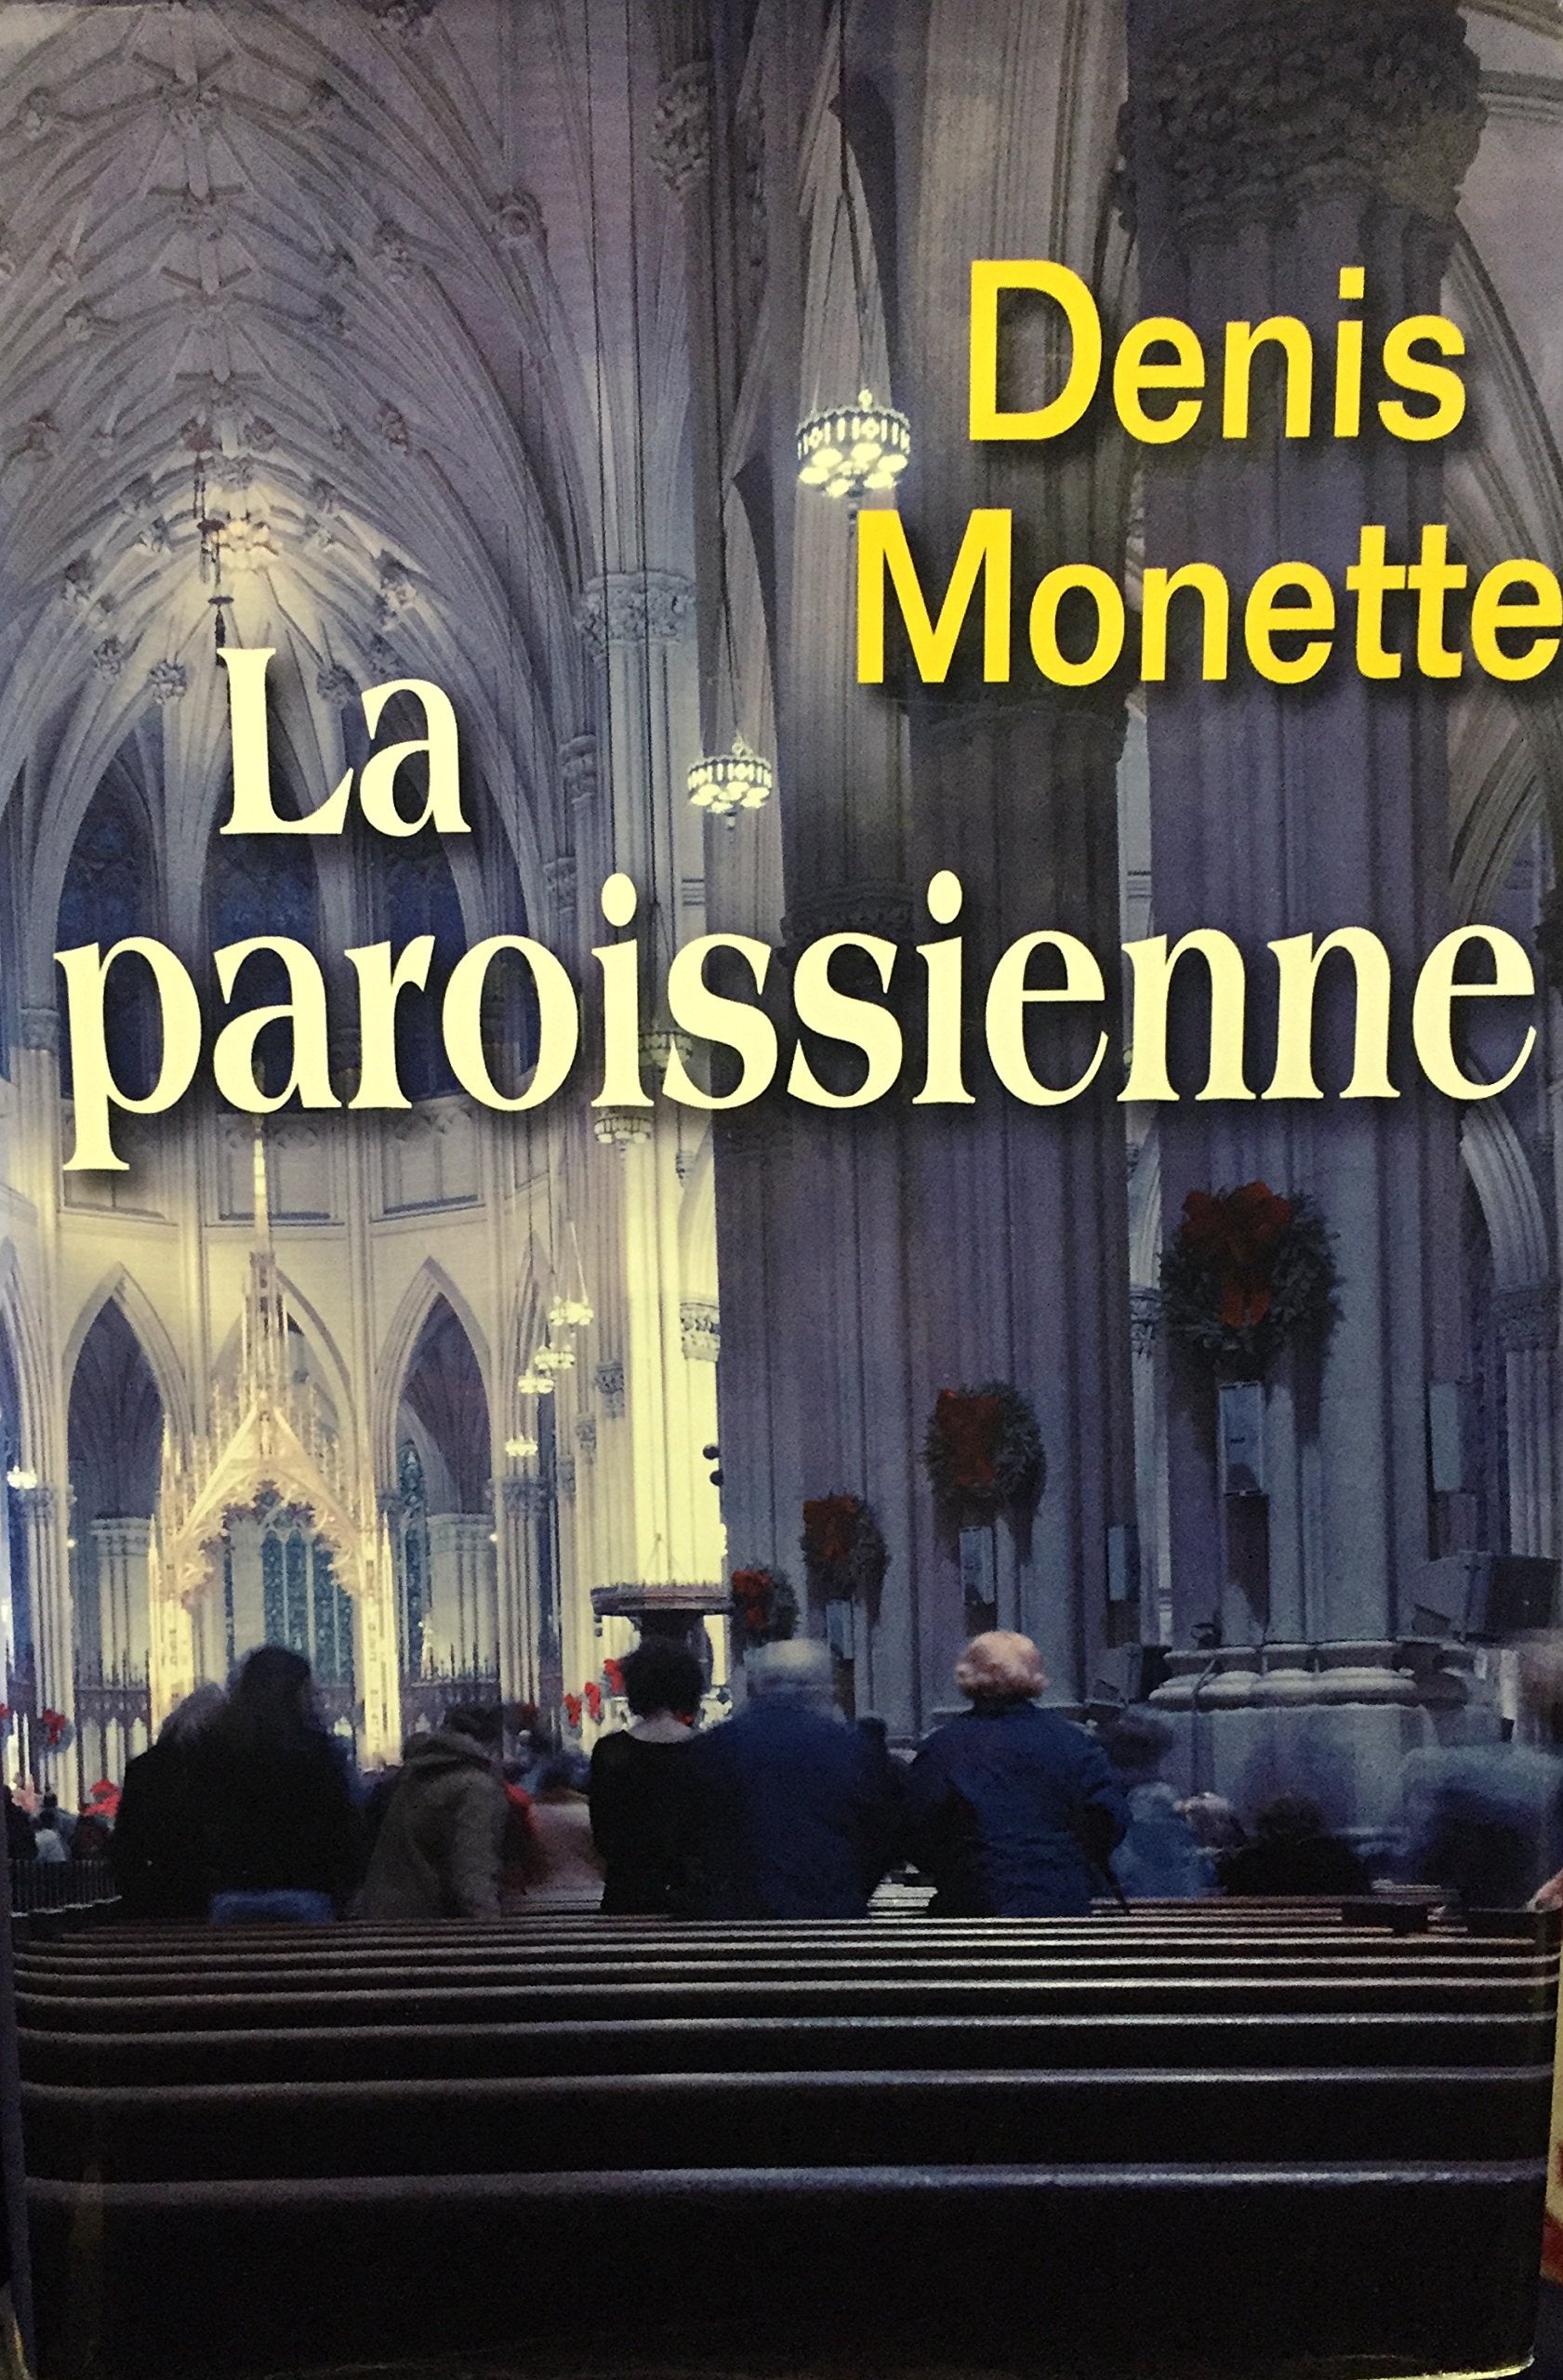 Livre ISBN 289430806X La paroissienne (Denis Monette)